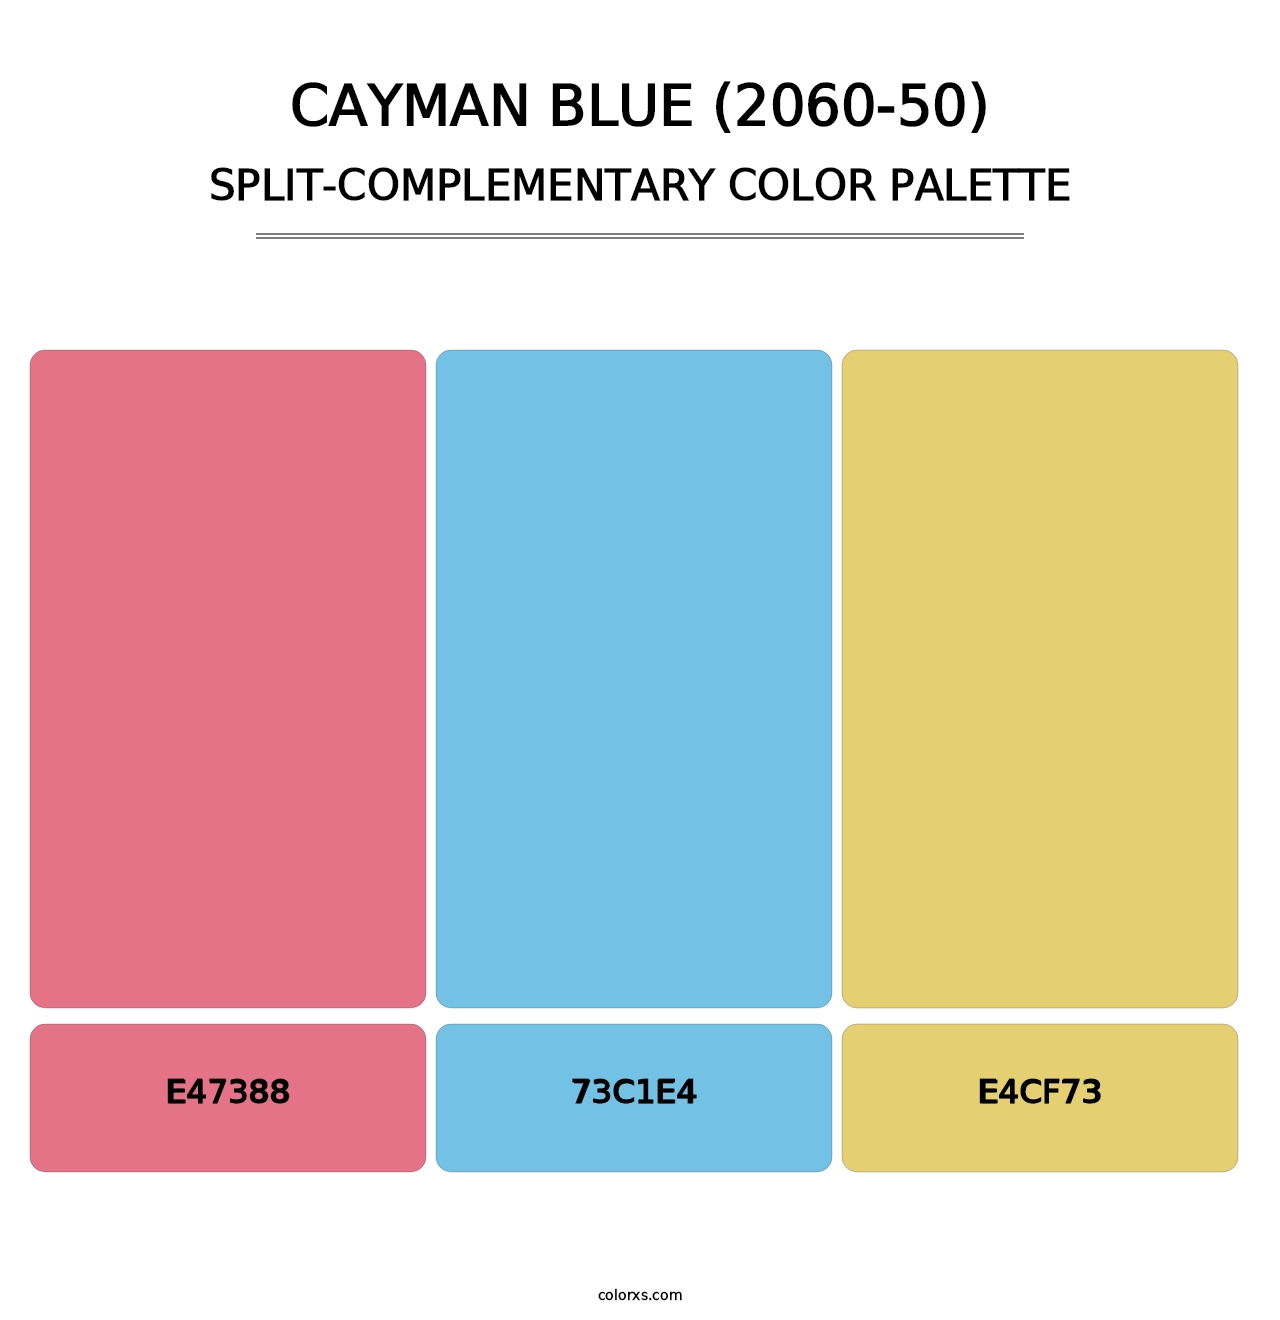 Cayman Blue (2060-50) - Split-Complementary Color Palette